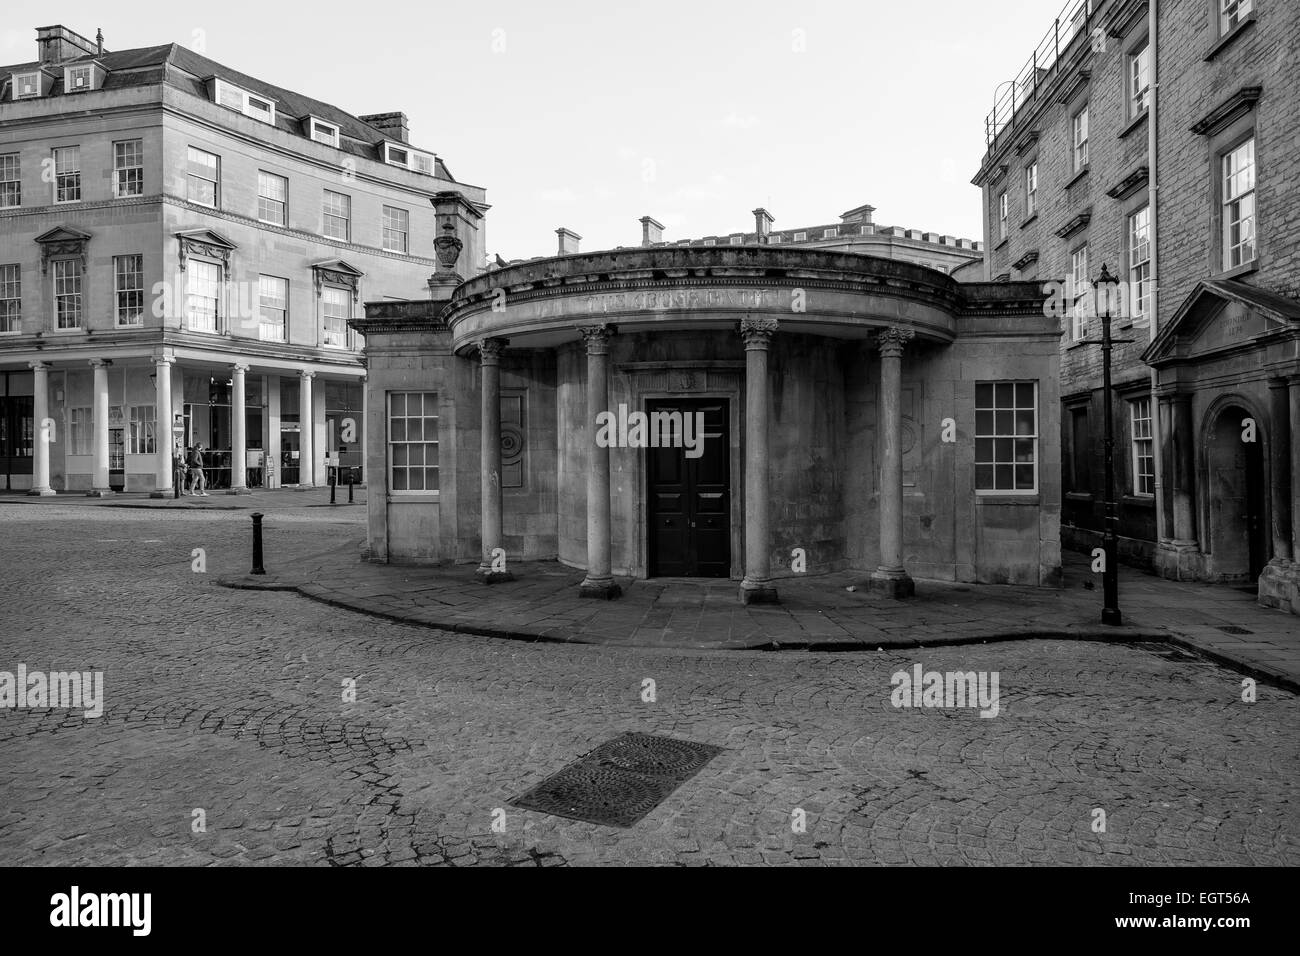 Bath, Angleterre, Royaume-Uni - 18 févr. 2015 : La Croix des Bains, dans l'arrière-plan le plus grand et moderne, baignoire Spa Banque D'Images